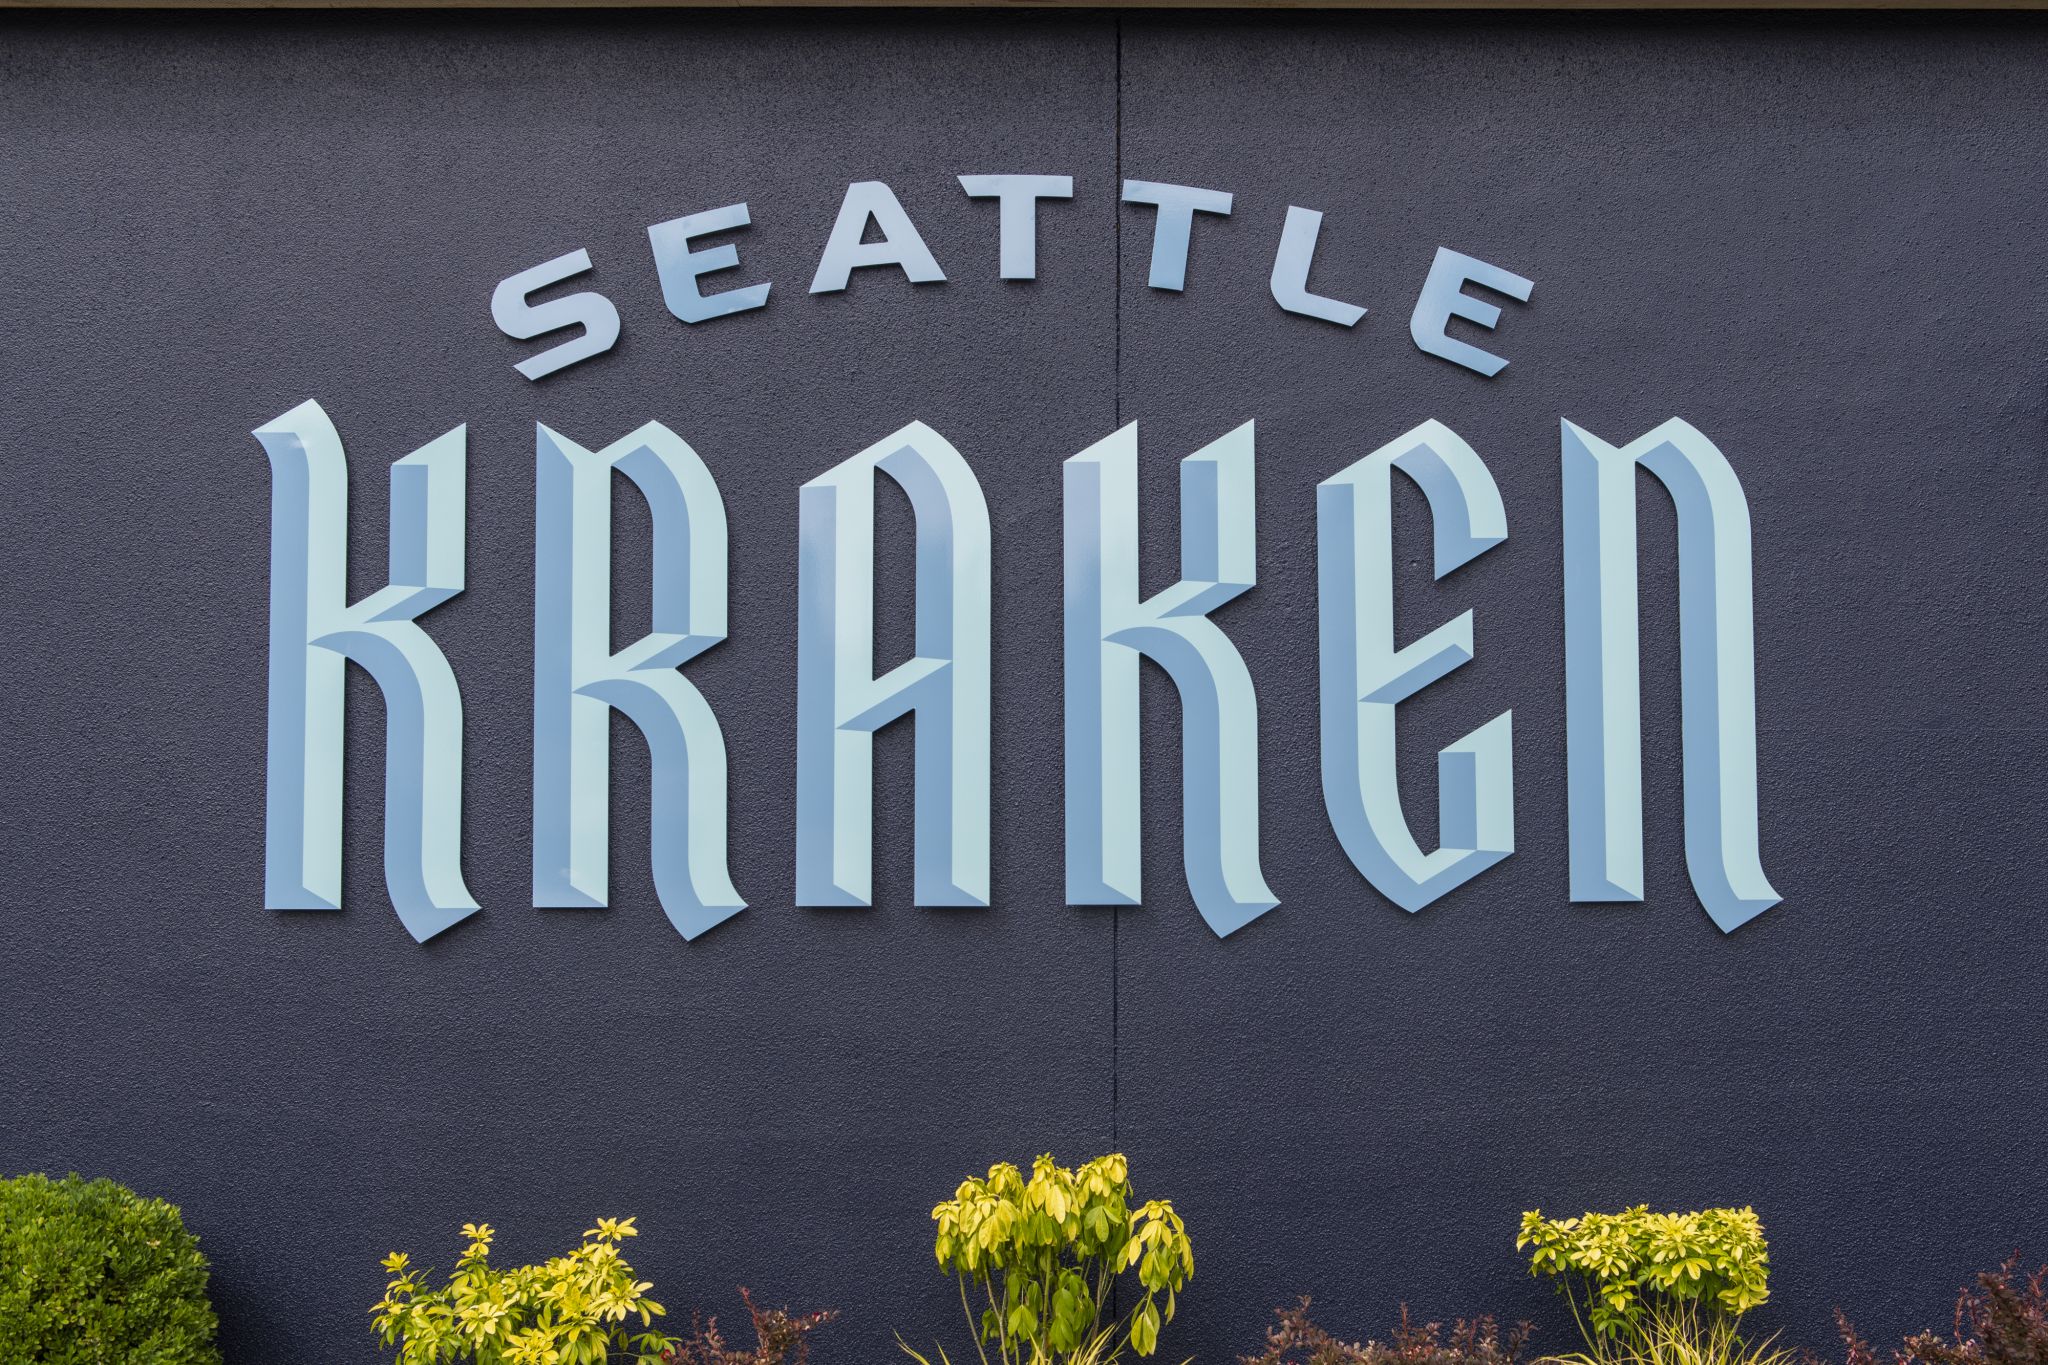 Seattle Kraken to host opening celebration of Community Iceplex in September